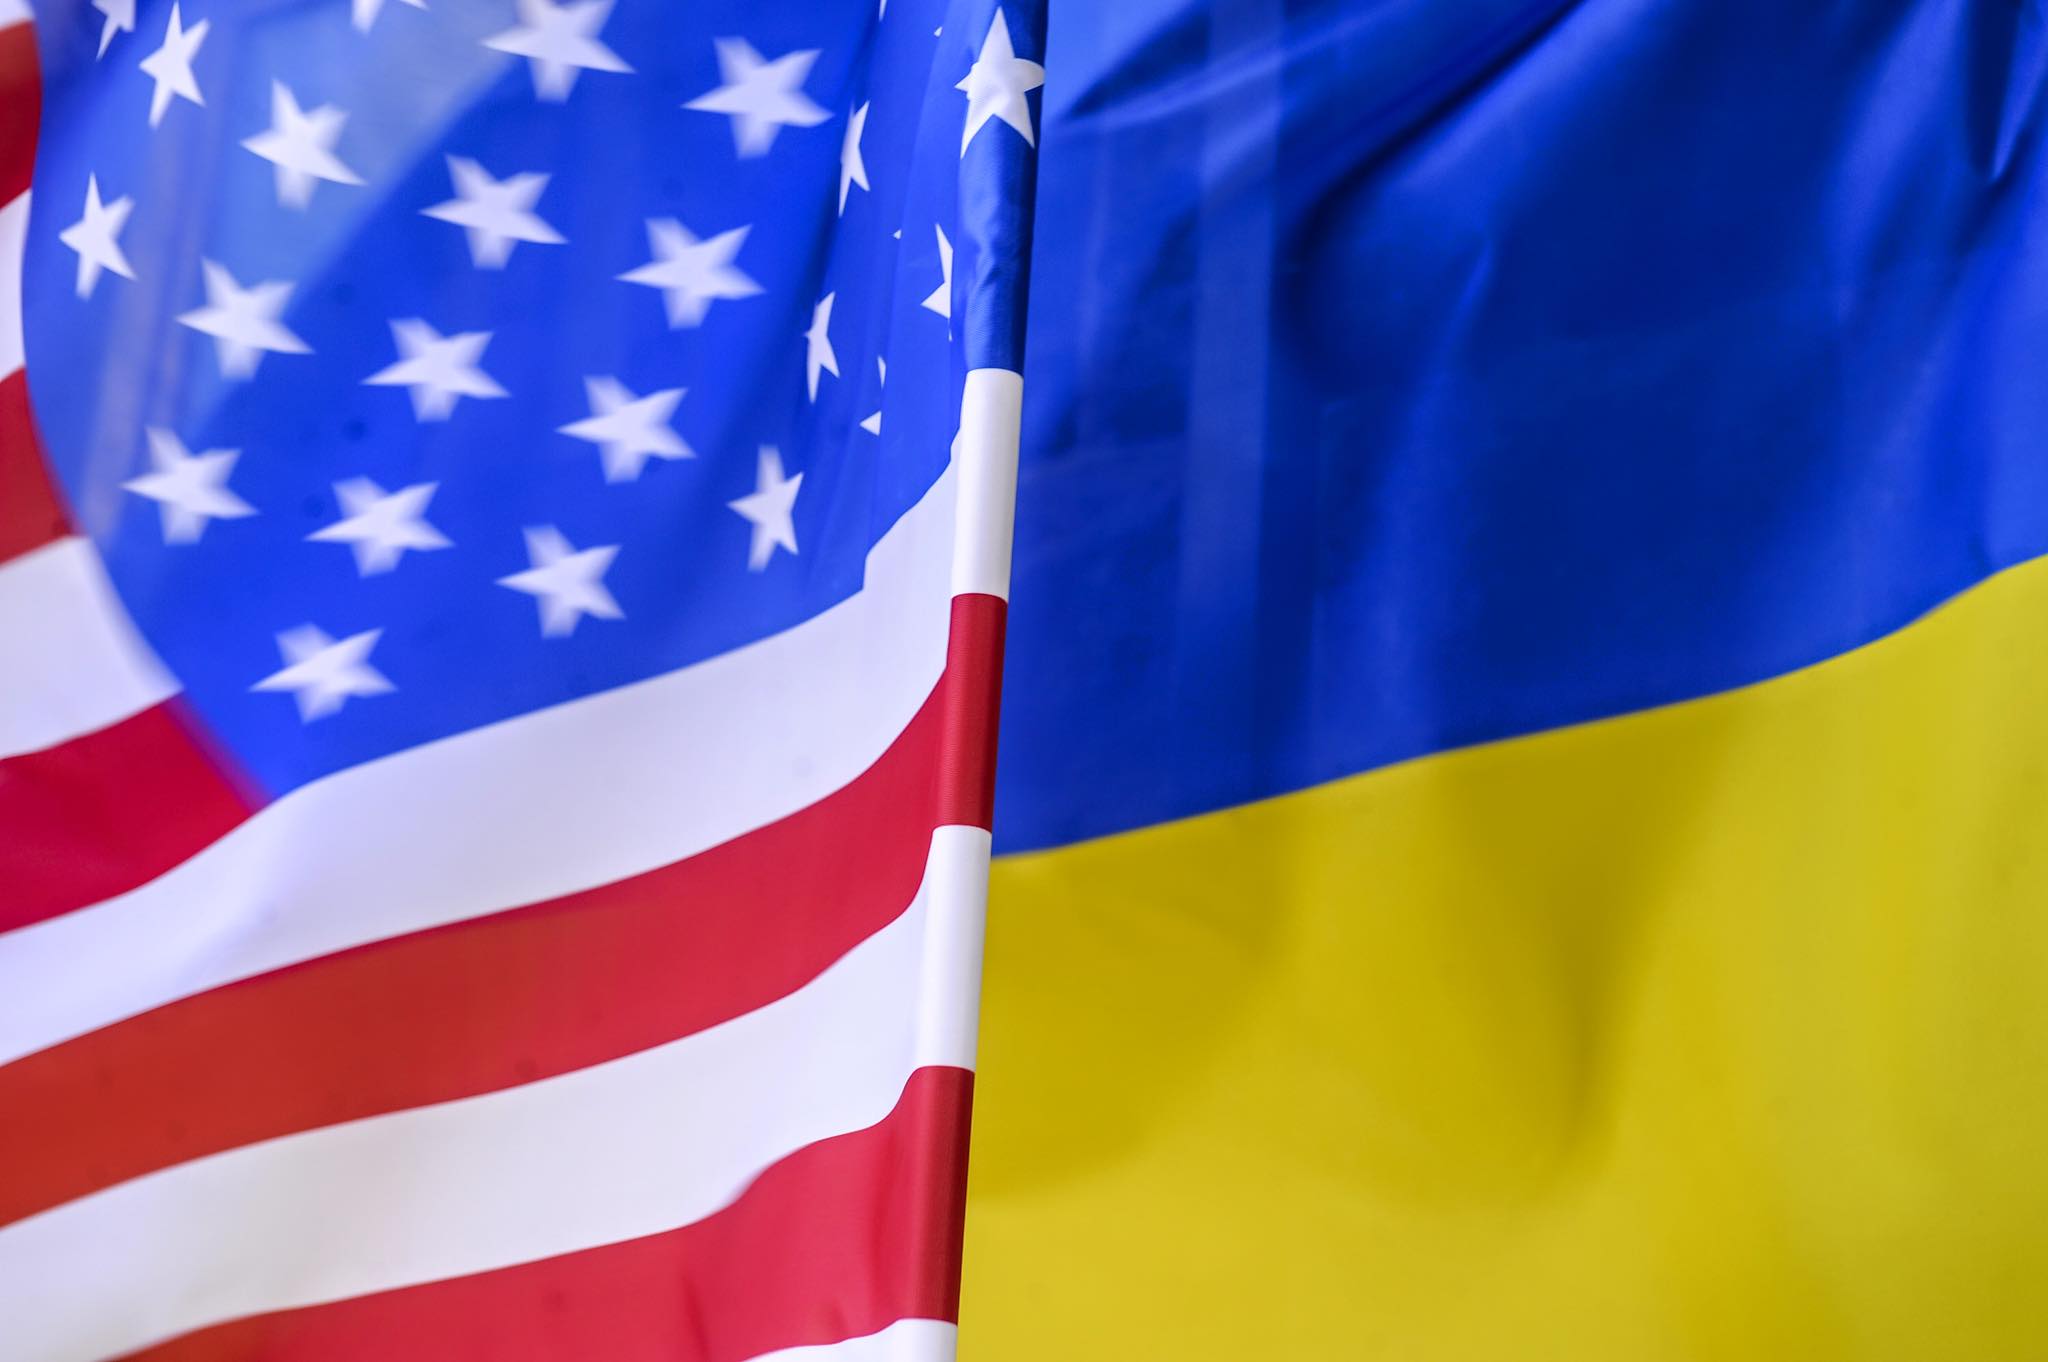 "Украину сейчас никто ни в чем не обвиняет", - журналист советует Киеву позвать американцев и совместно с ними провести ревизию, чтобы установить, что никакие двигатели в КНДР не отправлялись